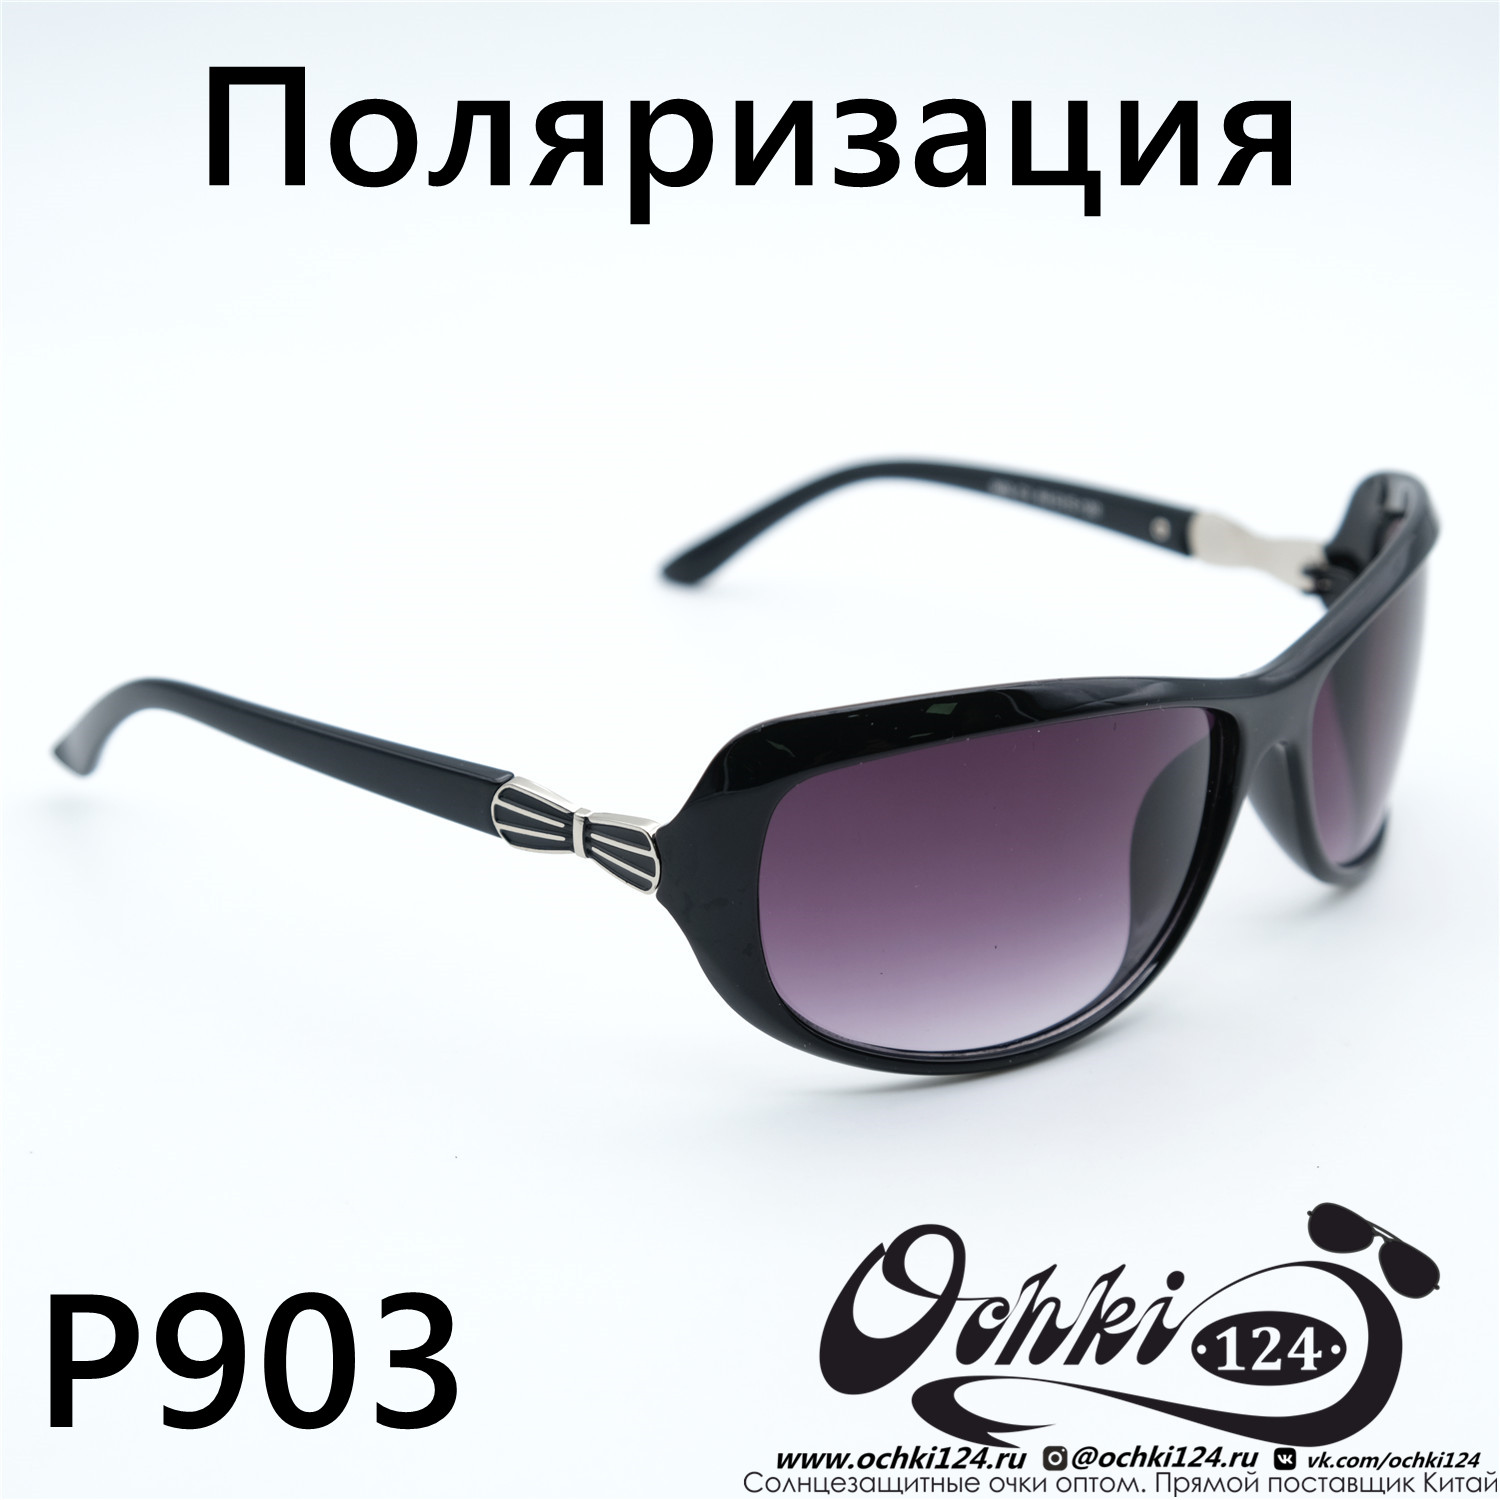  Солнцезащитные очки картинка Женские Prius Polarized Стандартные P903-C1 